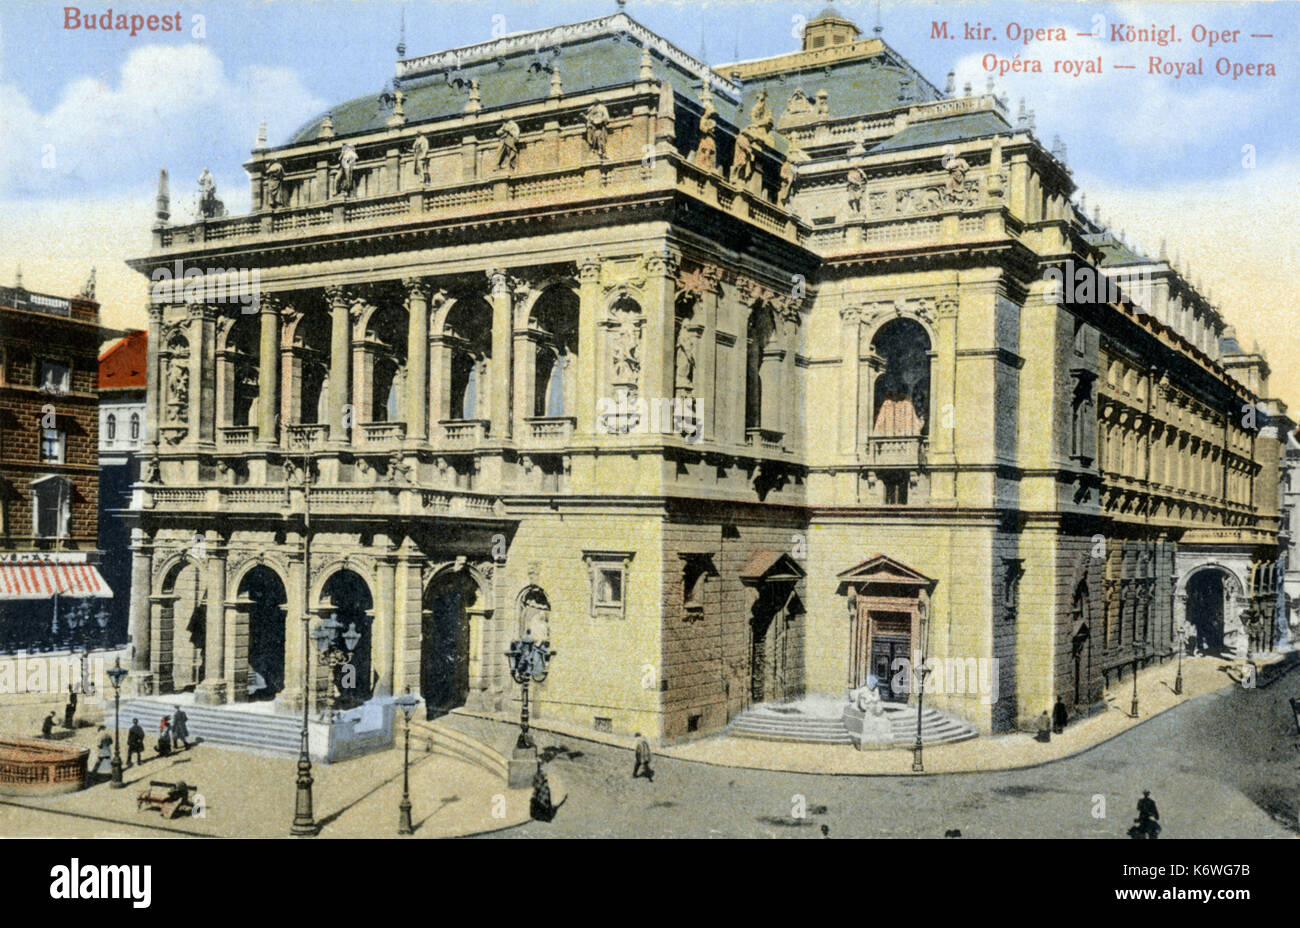 BUDAPEST - Royal Opera House - extérieur au début du 20e siècle Banque D'Images